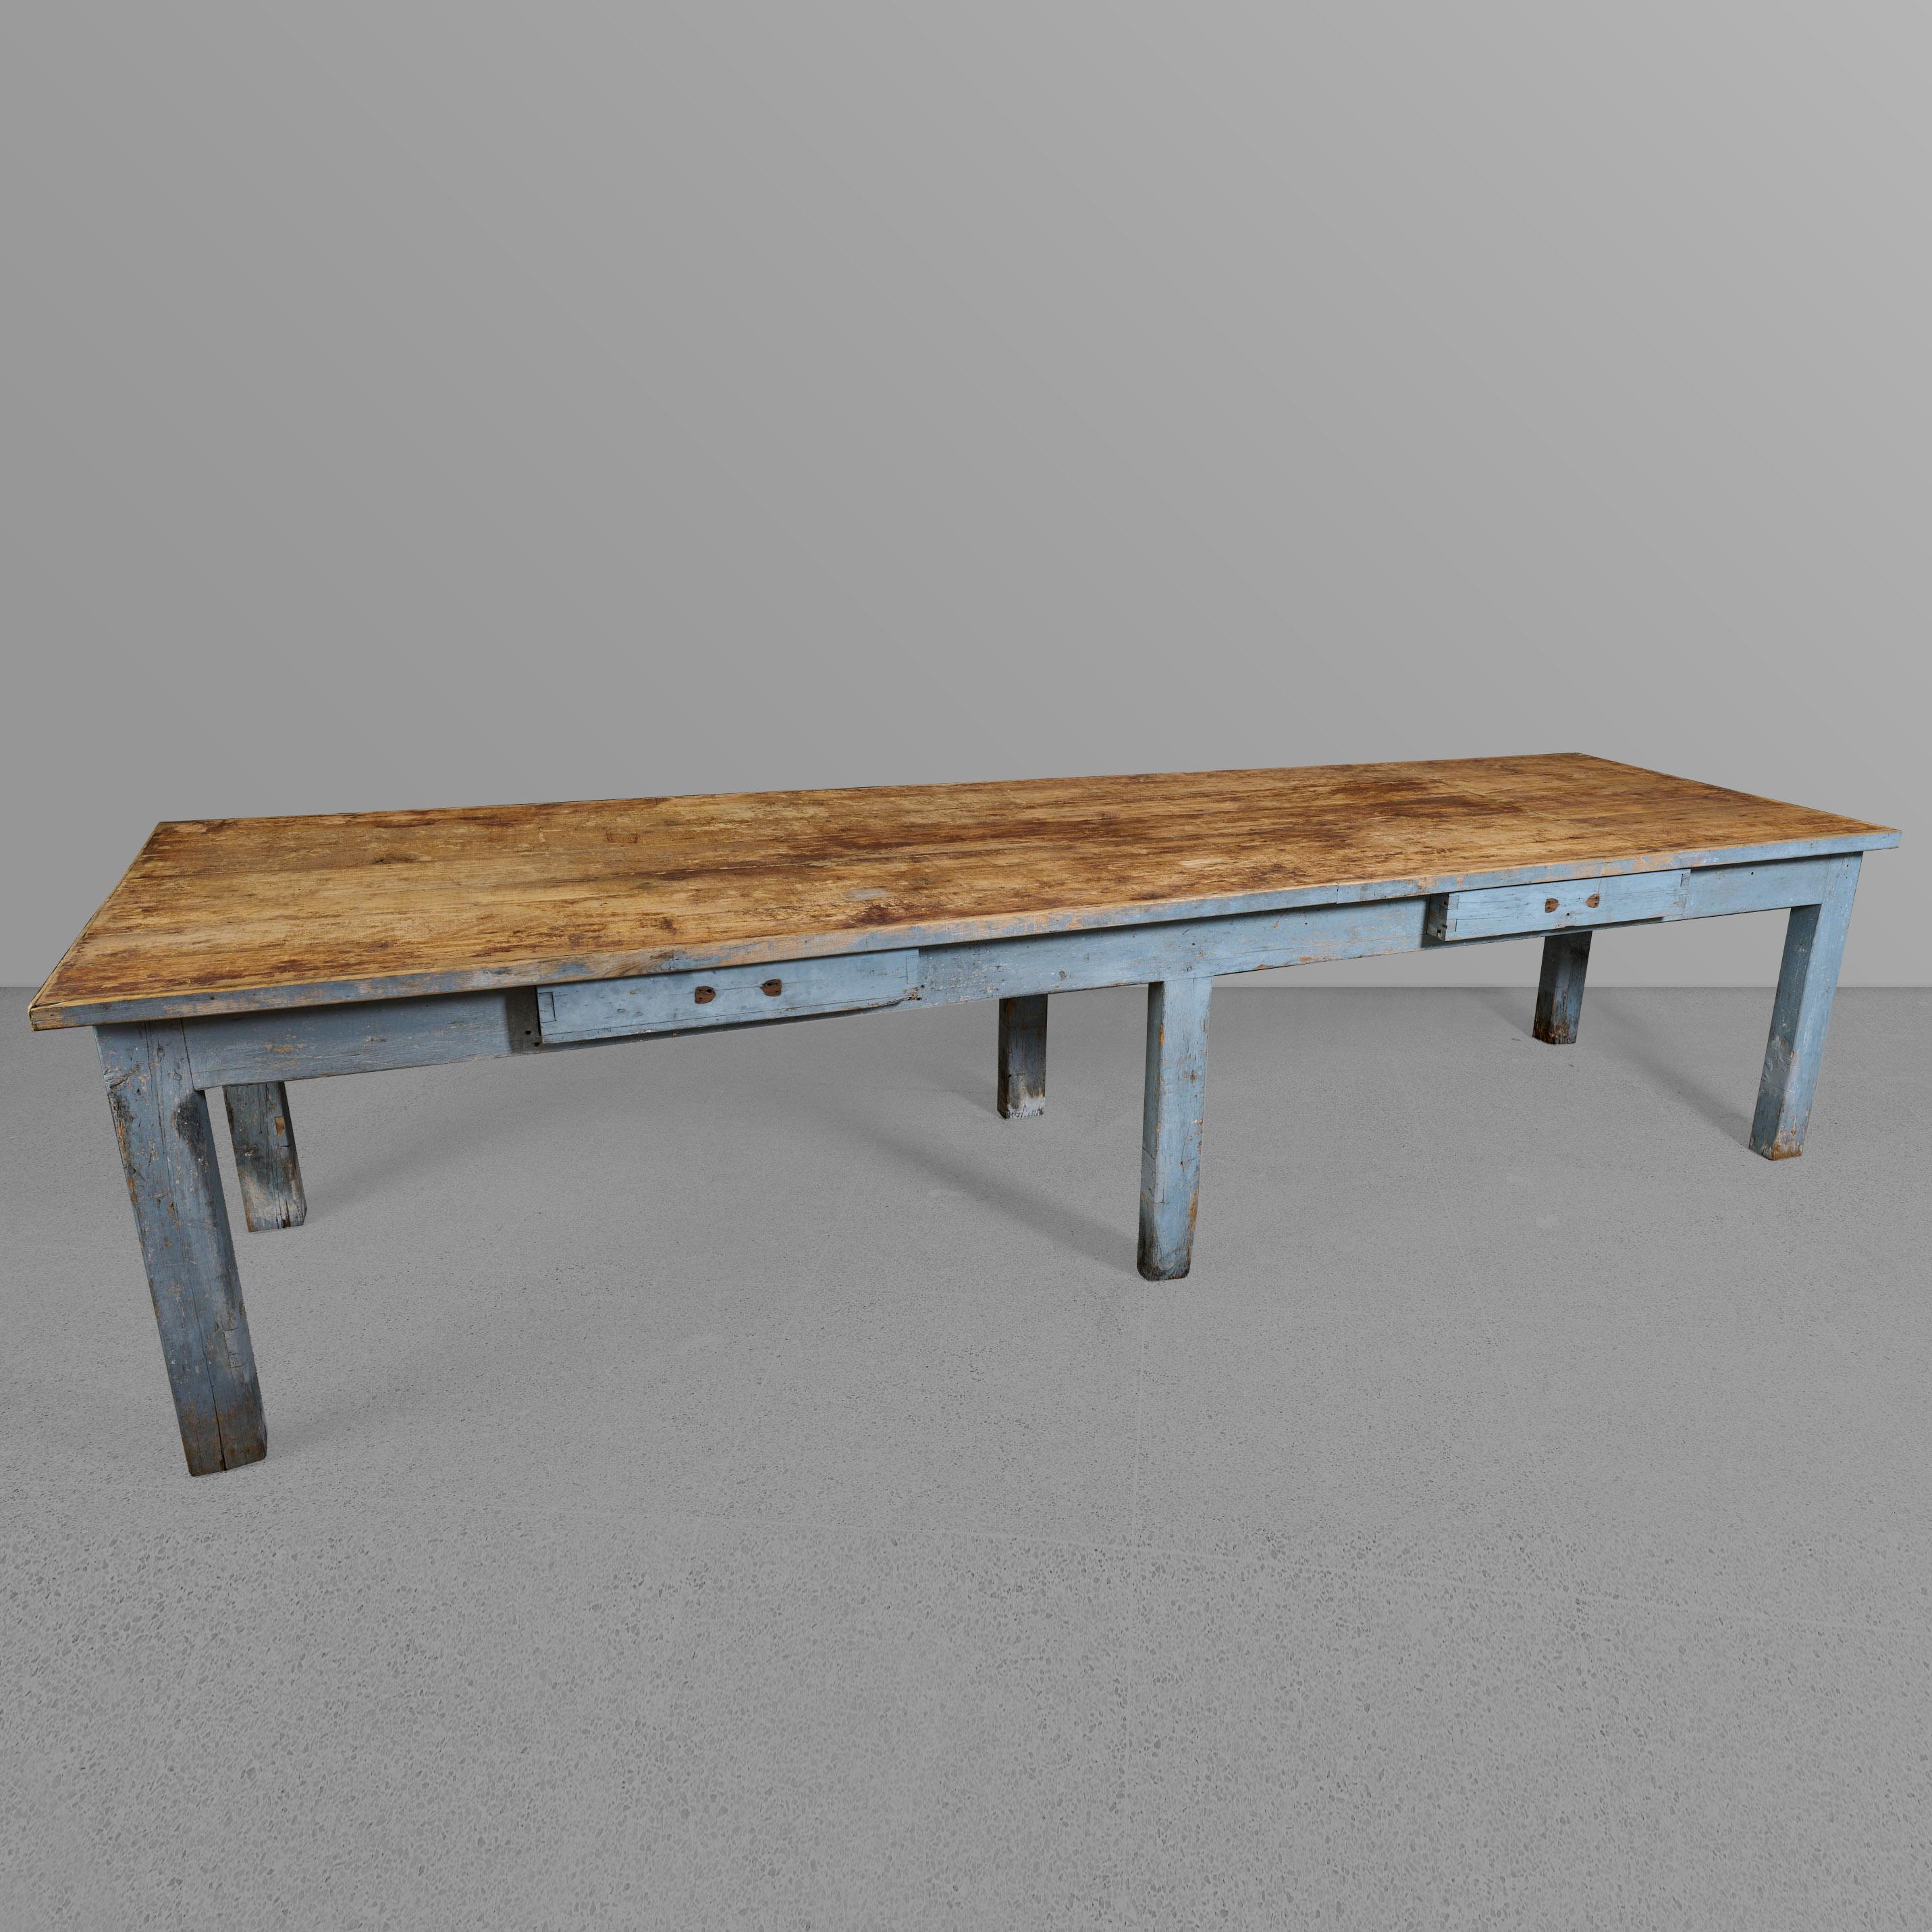 Tisch mit sechs Beinen und Schubladen. Wunderschöne Naturholzplatte mit blau lackiertem Sockel.

